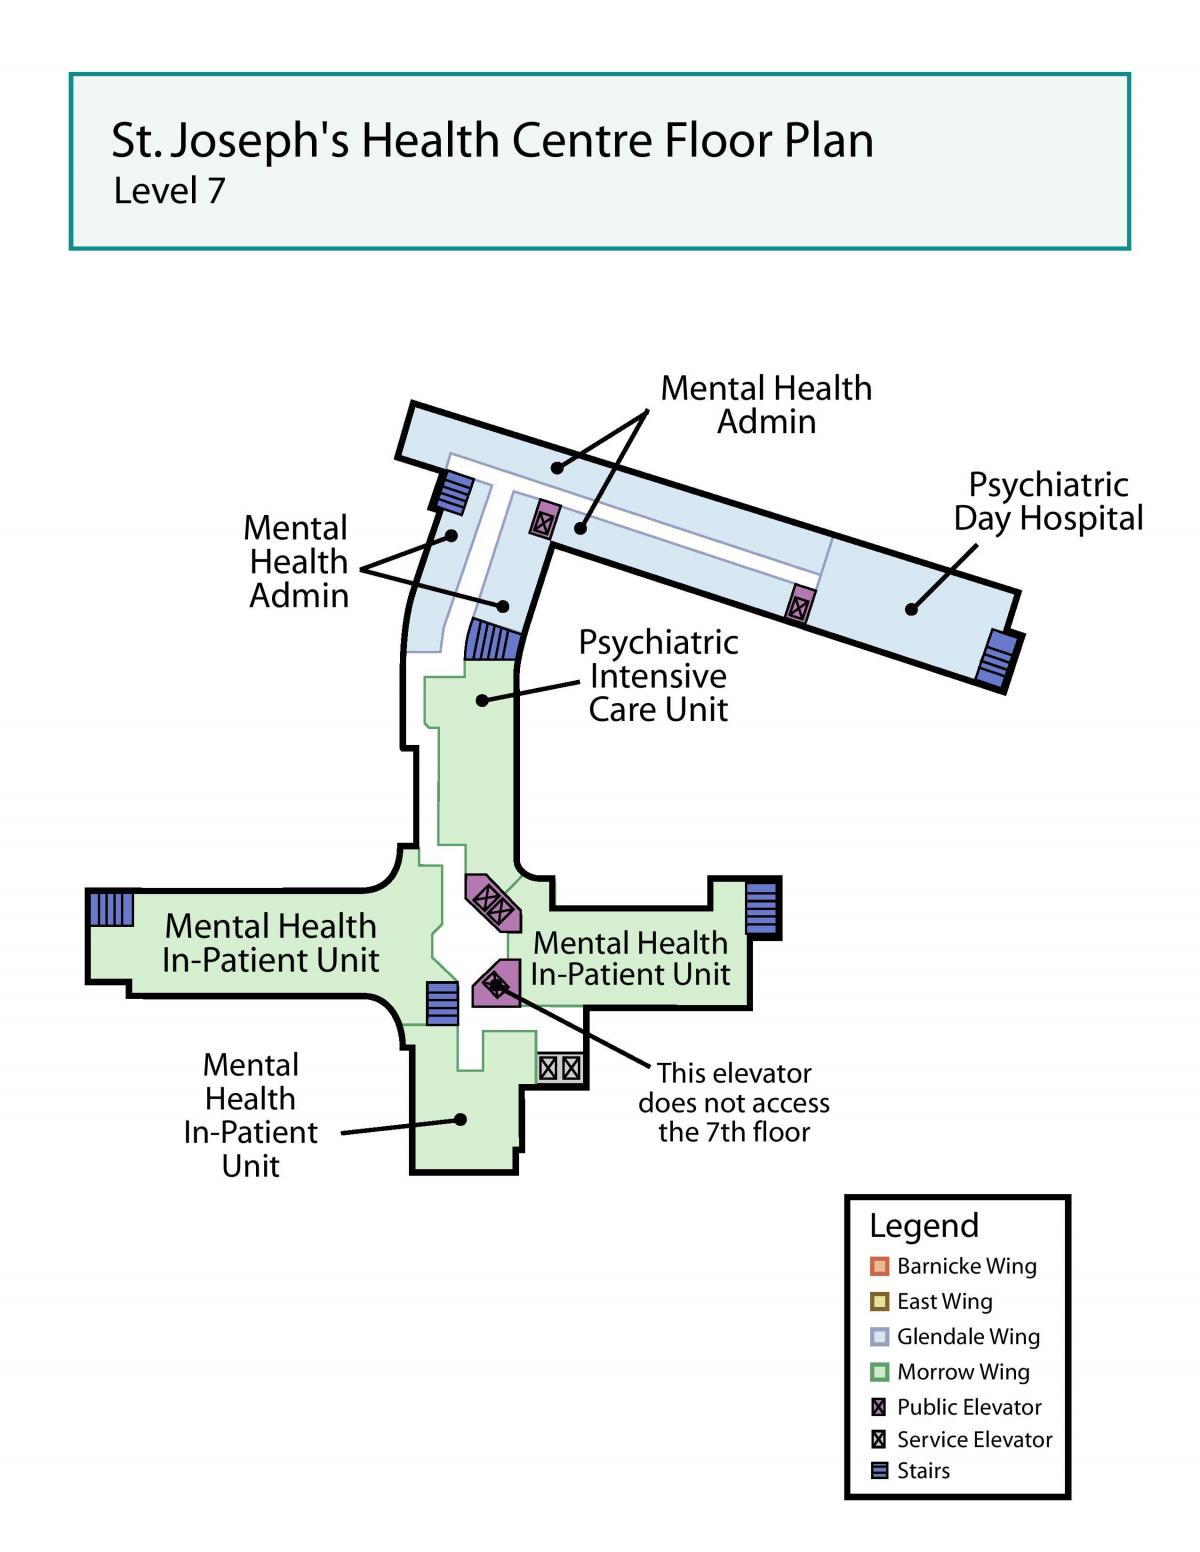 แผนที่ของเซนต์โจเซฟสุขภาพของศูนย์กลางโตรอนโตอยู่ในระดับ 7